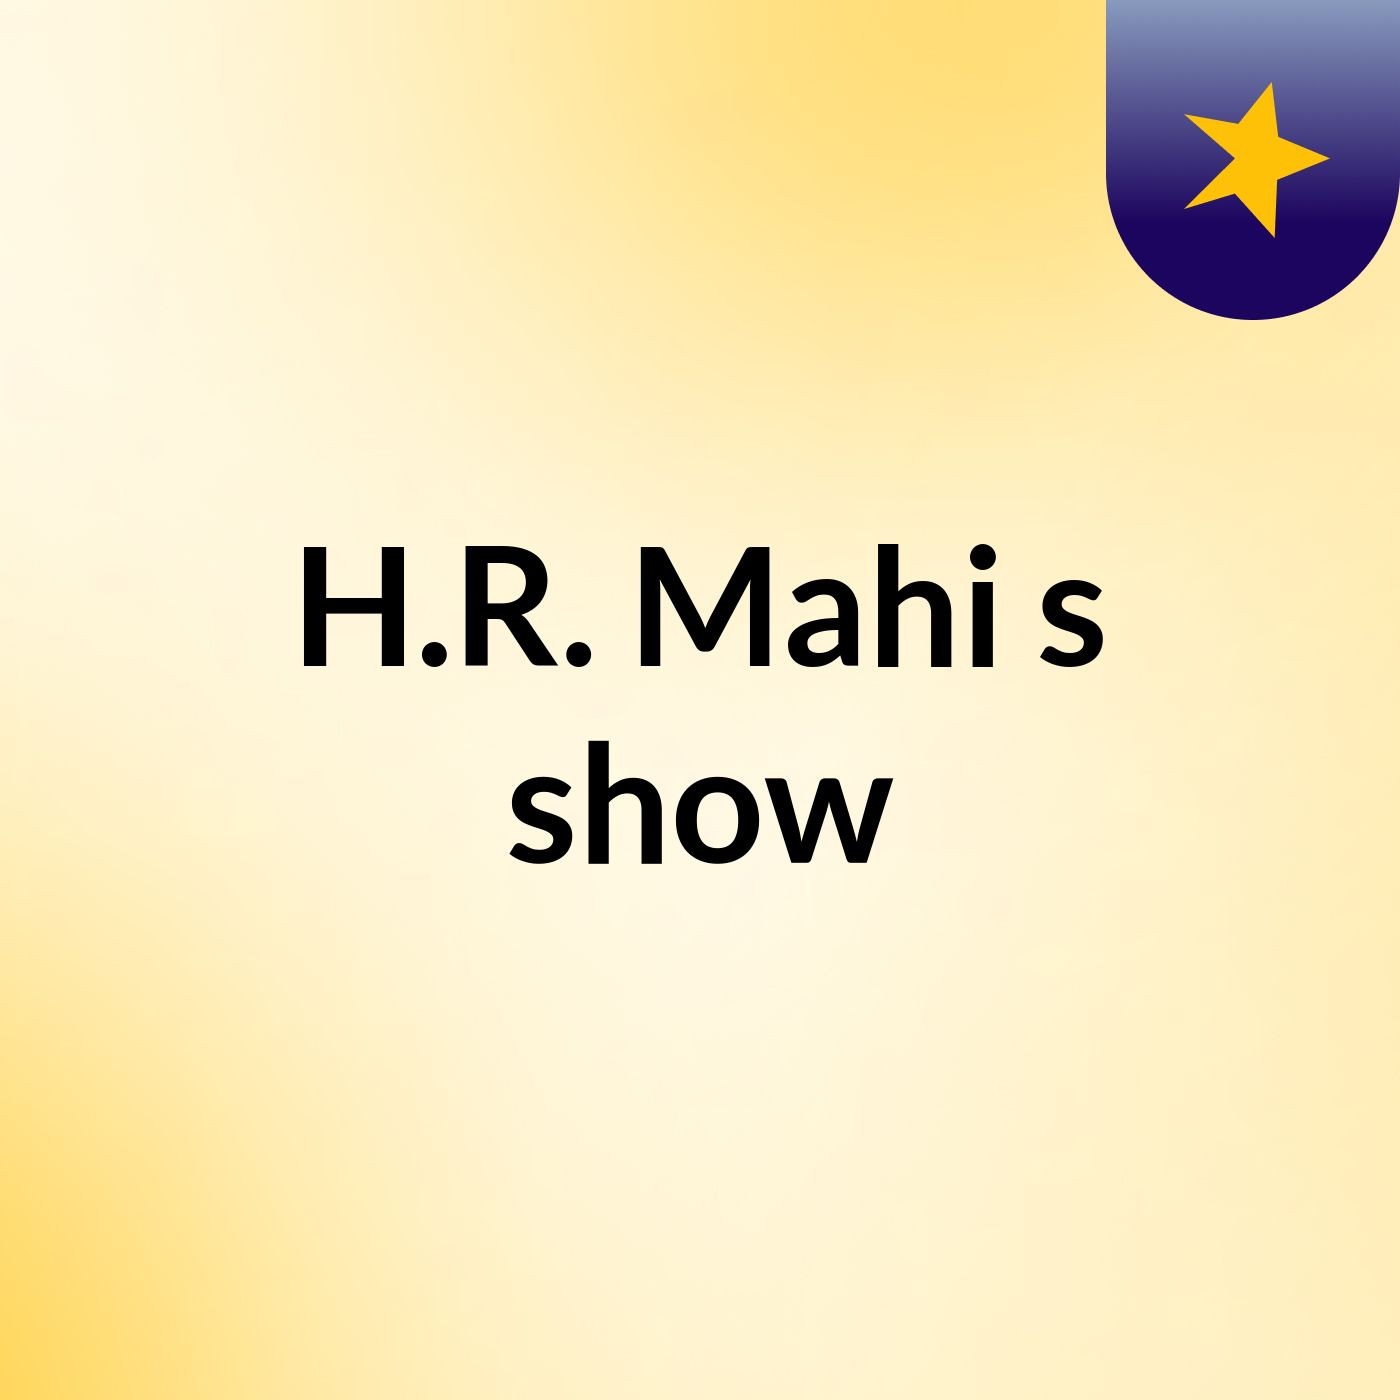 H.R. Mahi's show